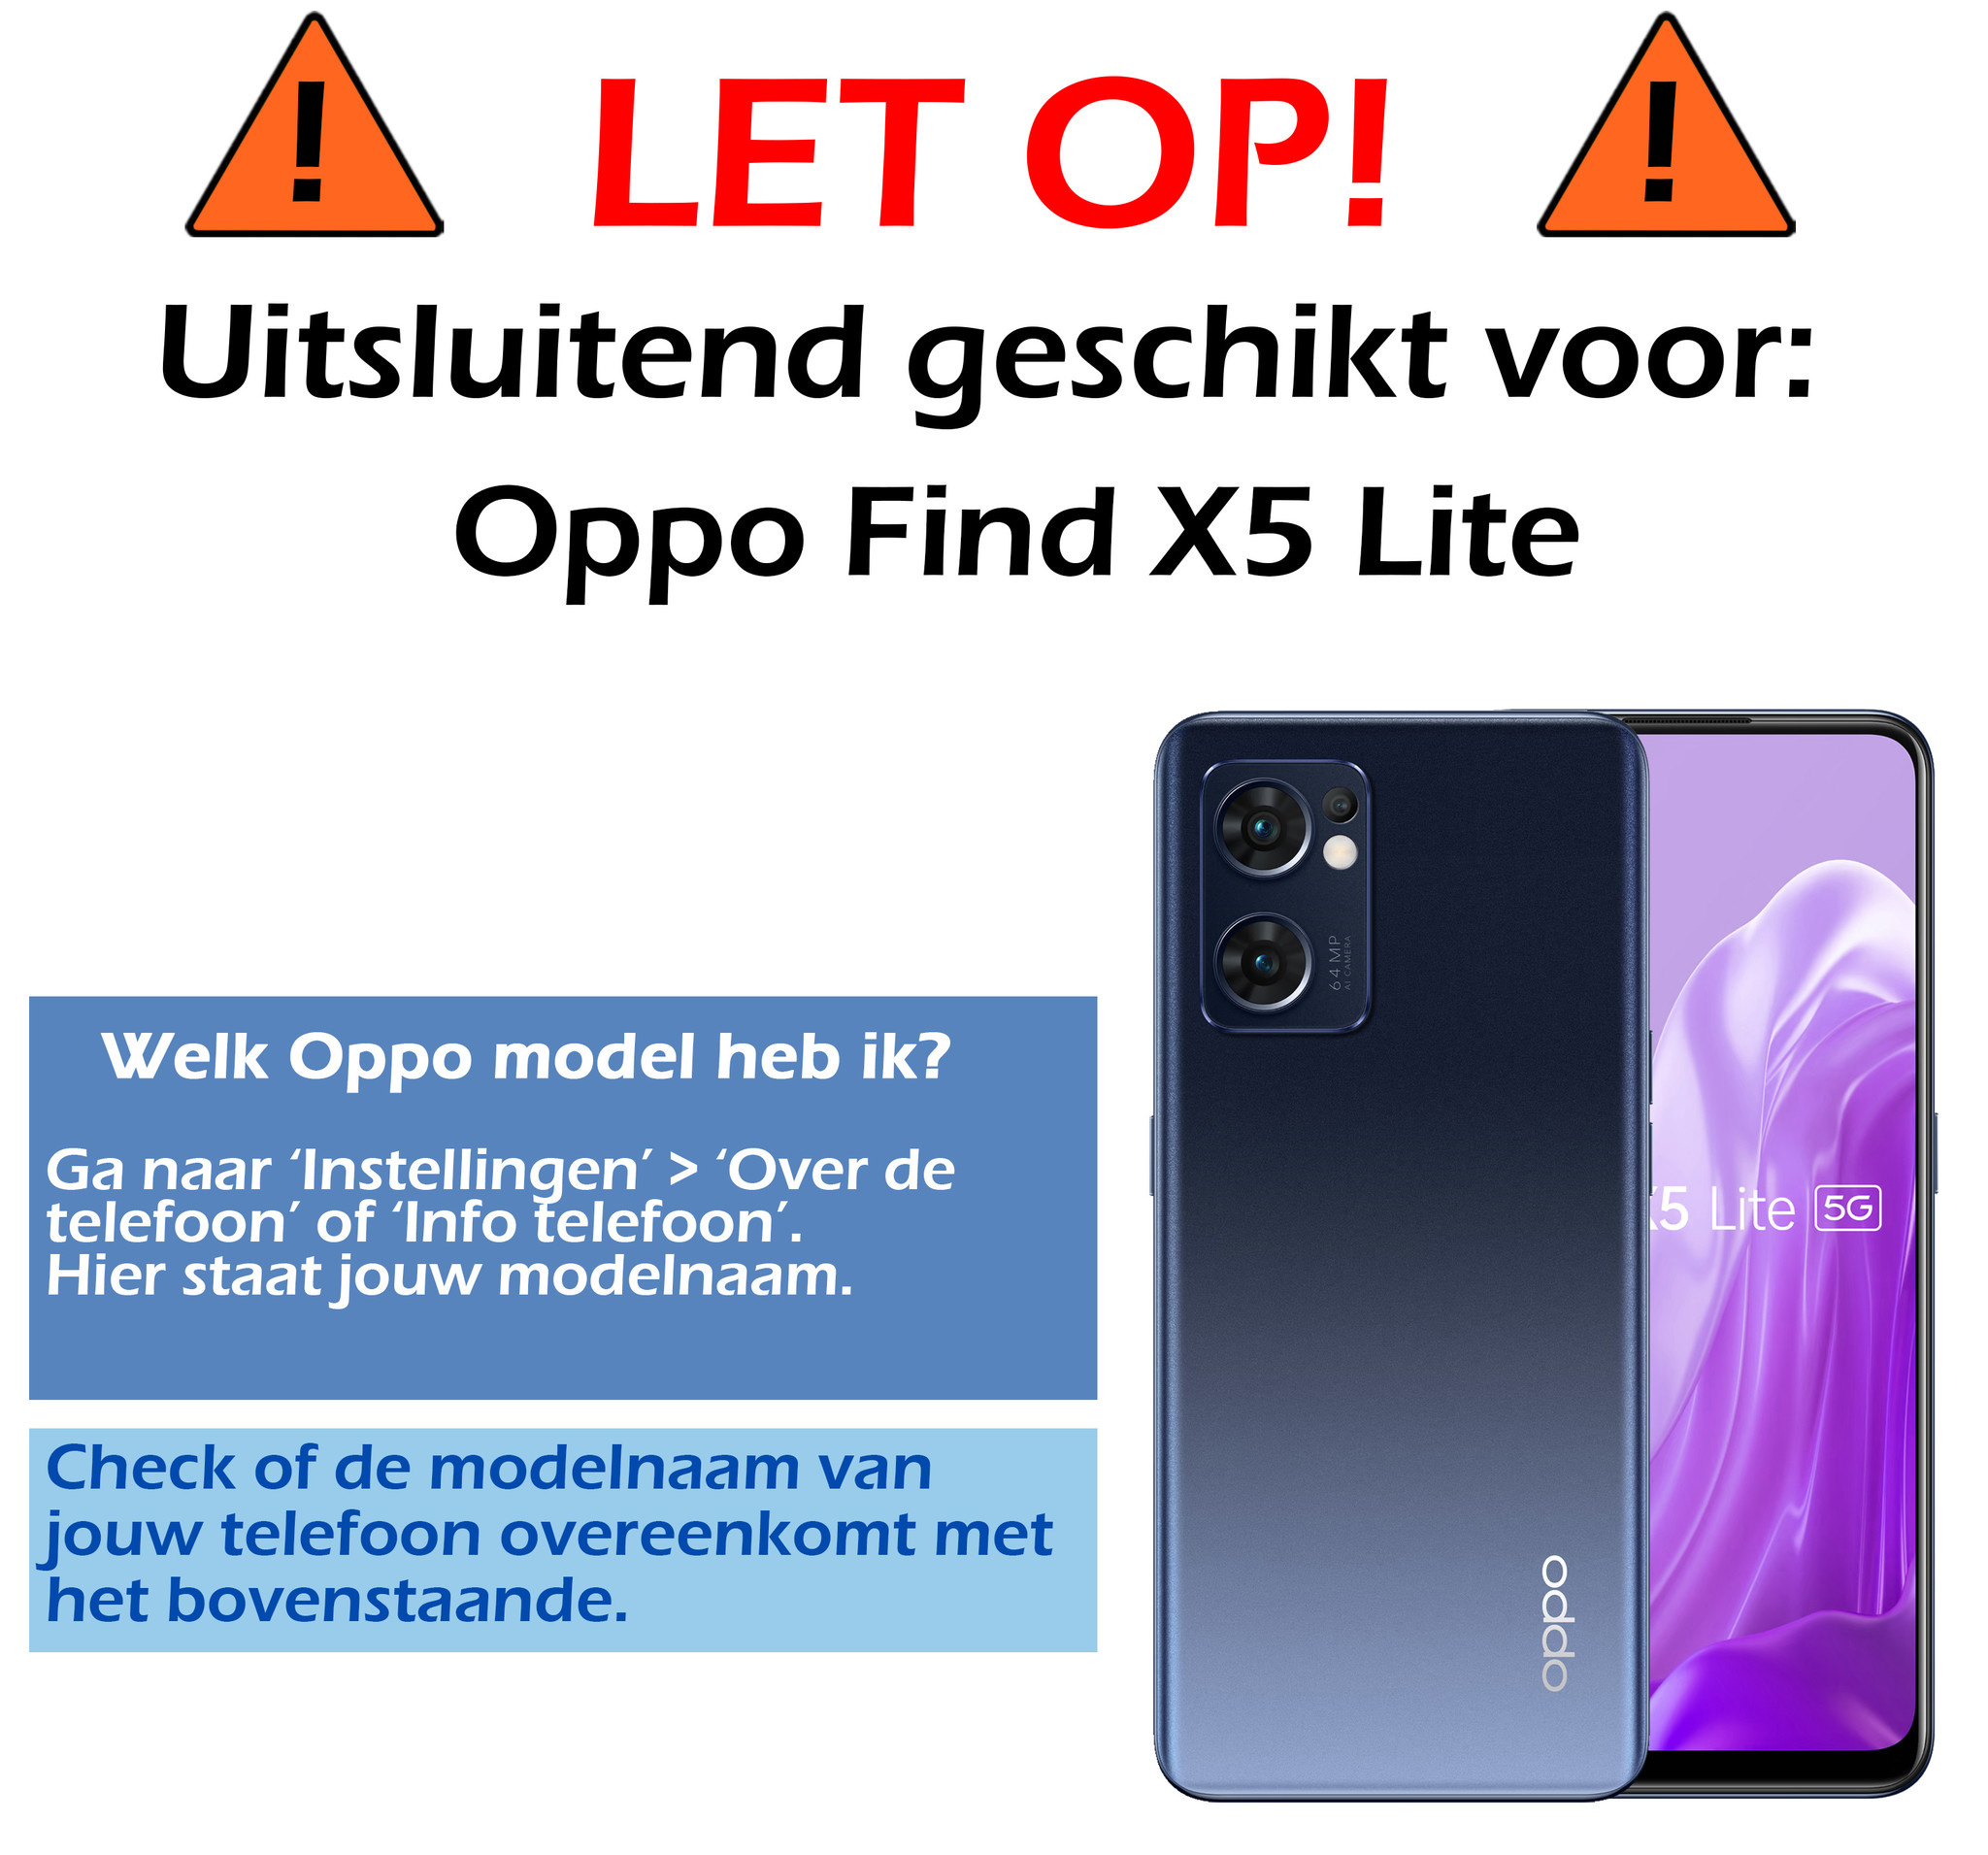 OPPO Find X5 Lite Hoesje Siliconen Case Back Cover Met 2x Screenprotector - OPPO Find X5 Lite Hoes Cover Silicone - Licht Roze